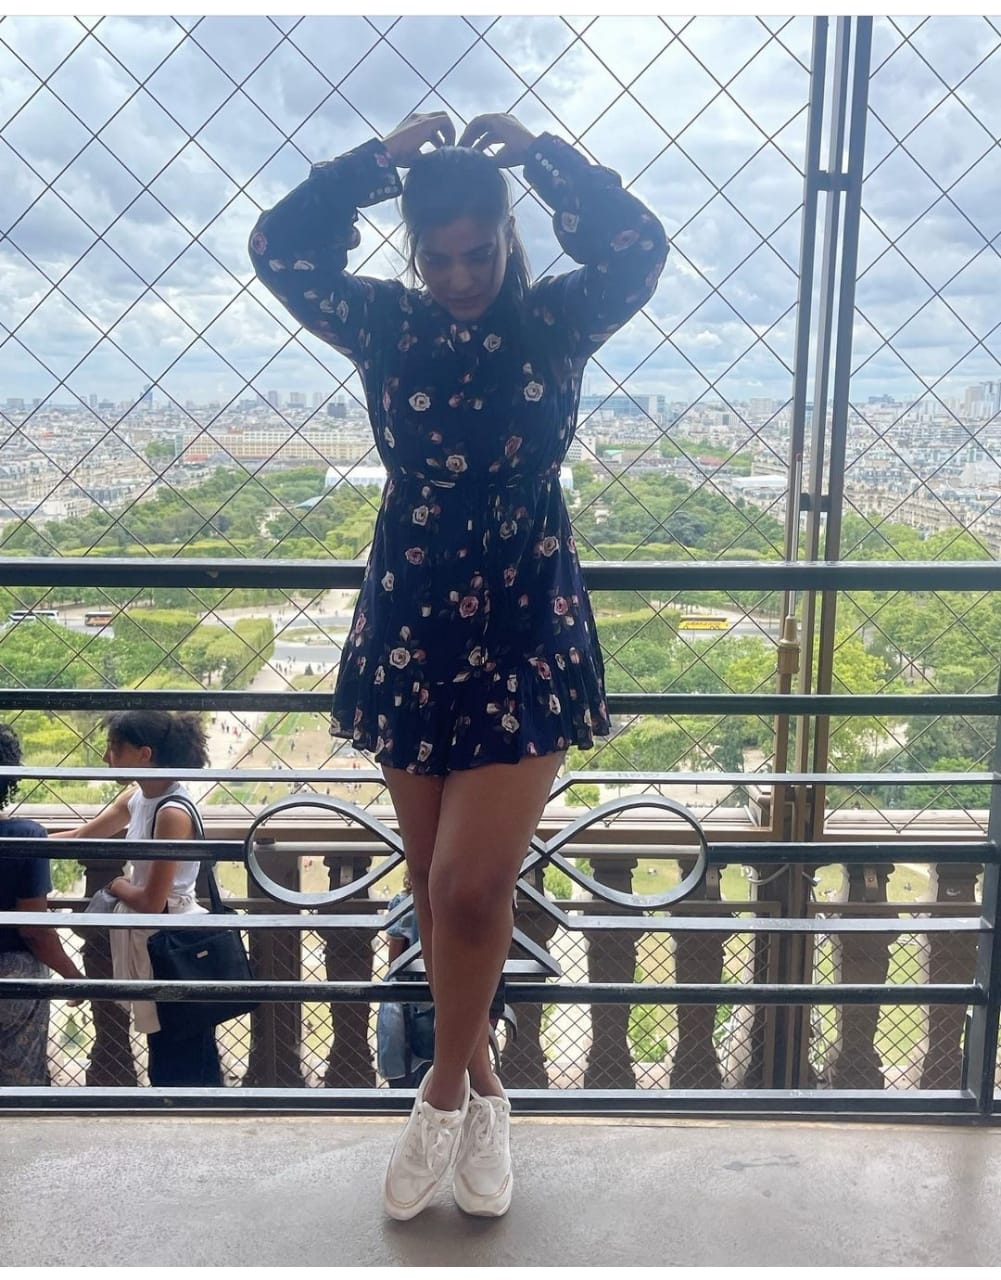 Aishwarya Rajesh France Paris Eiffel Tower Photos